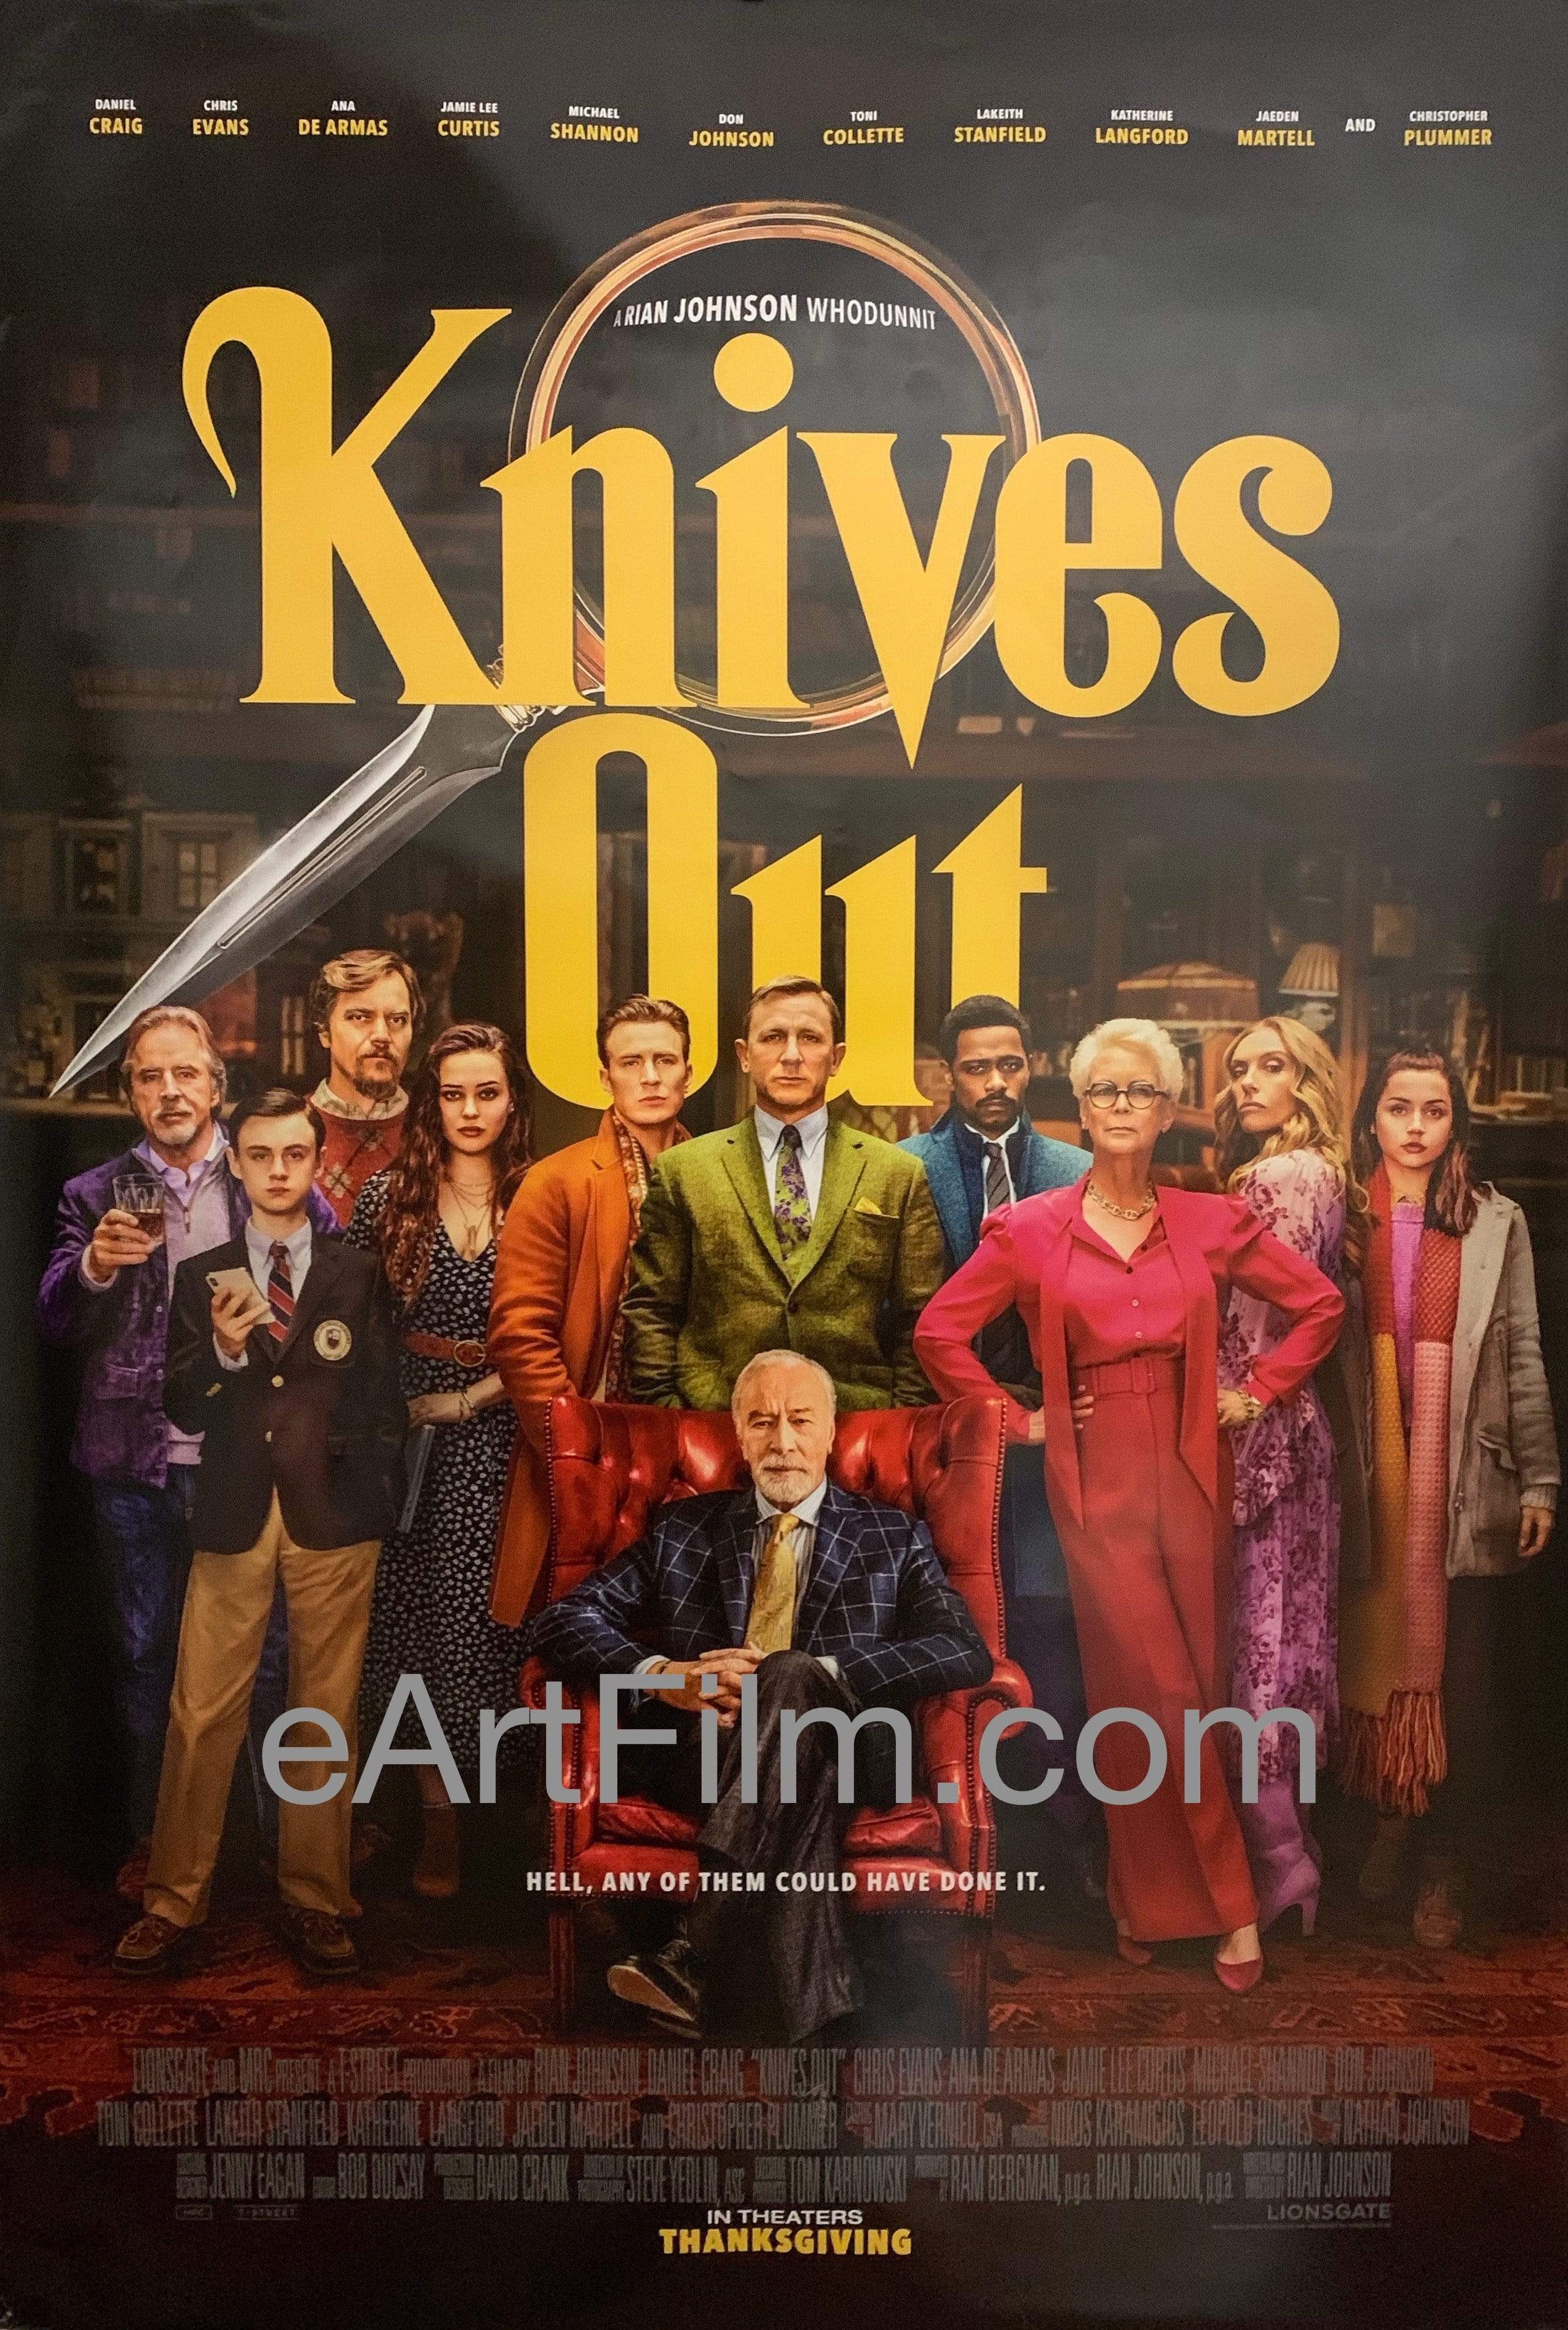 KNIVES OUT Trailer # 2 (2019) Ana de Armas, Chris Evans, Daniel